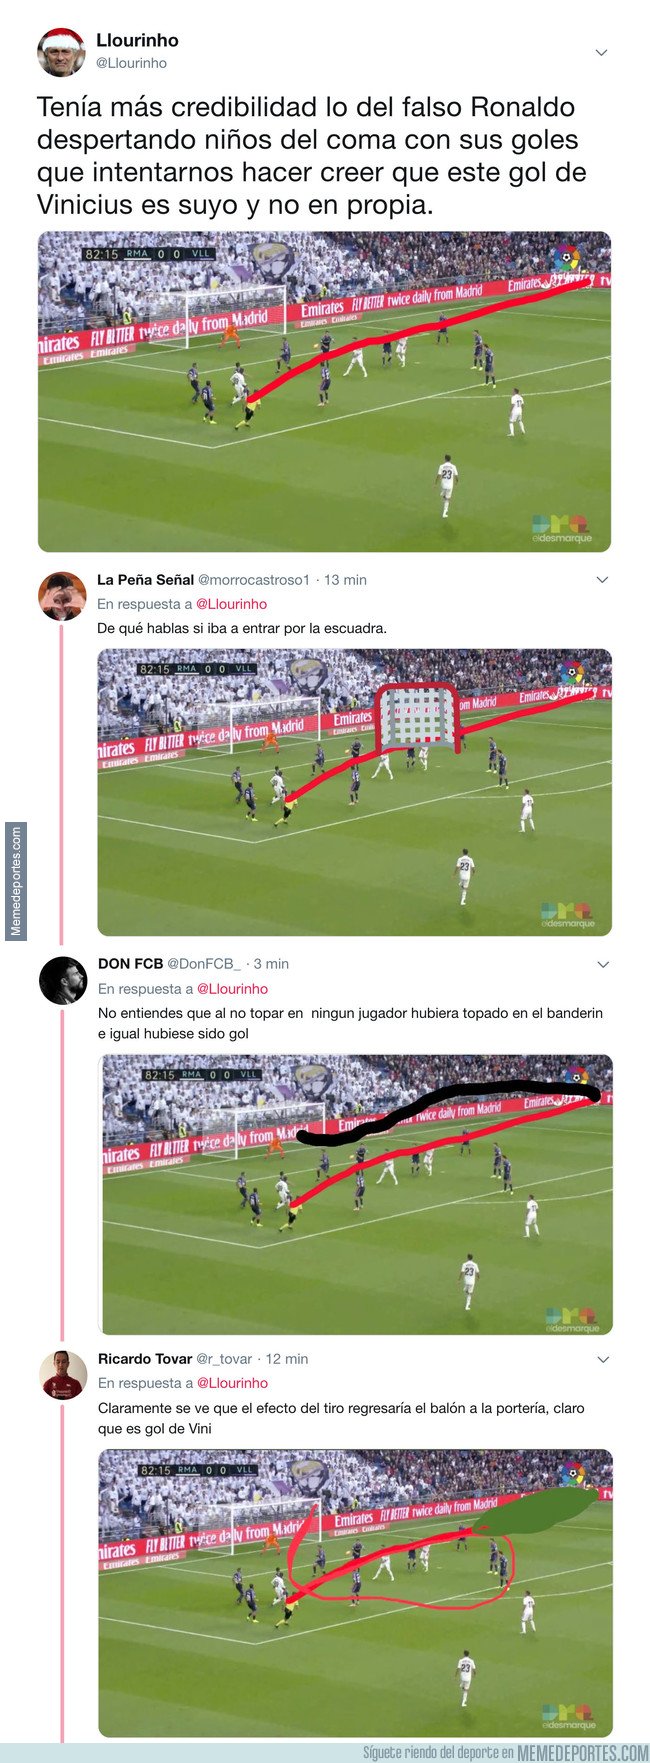 1055300 - El árbitro da este gol de Vinicius como propio y Twitter lanza las teorías de como ha sido posible